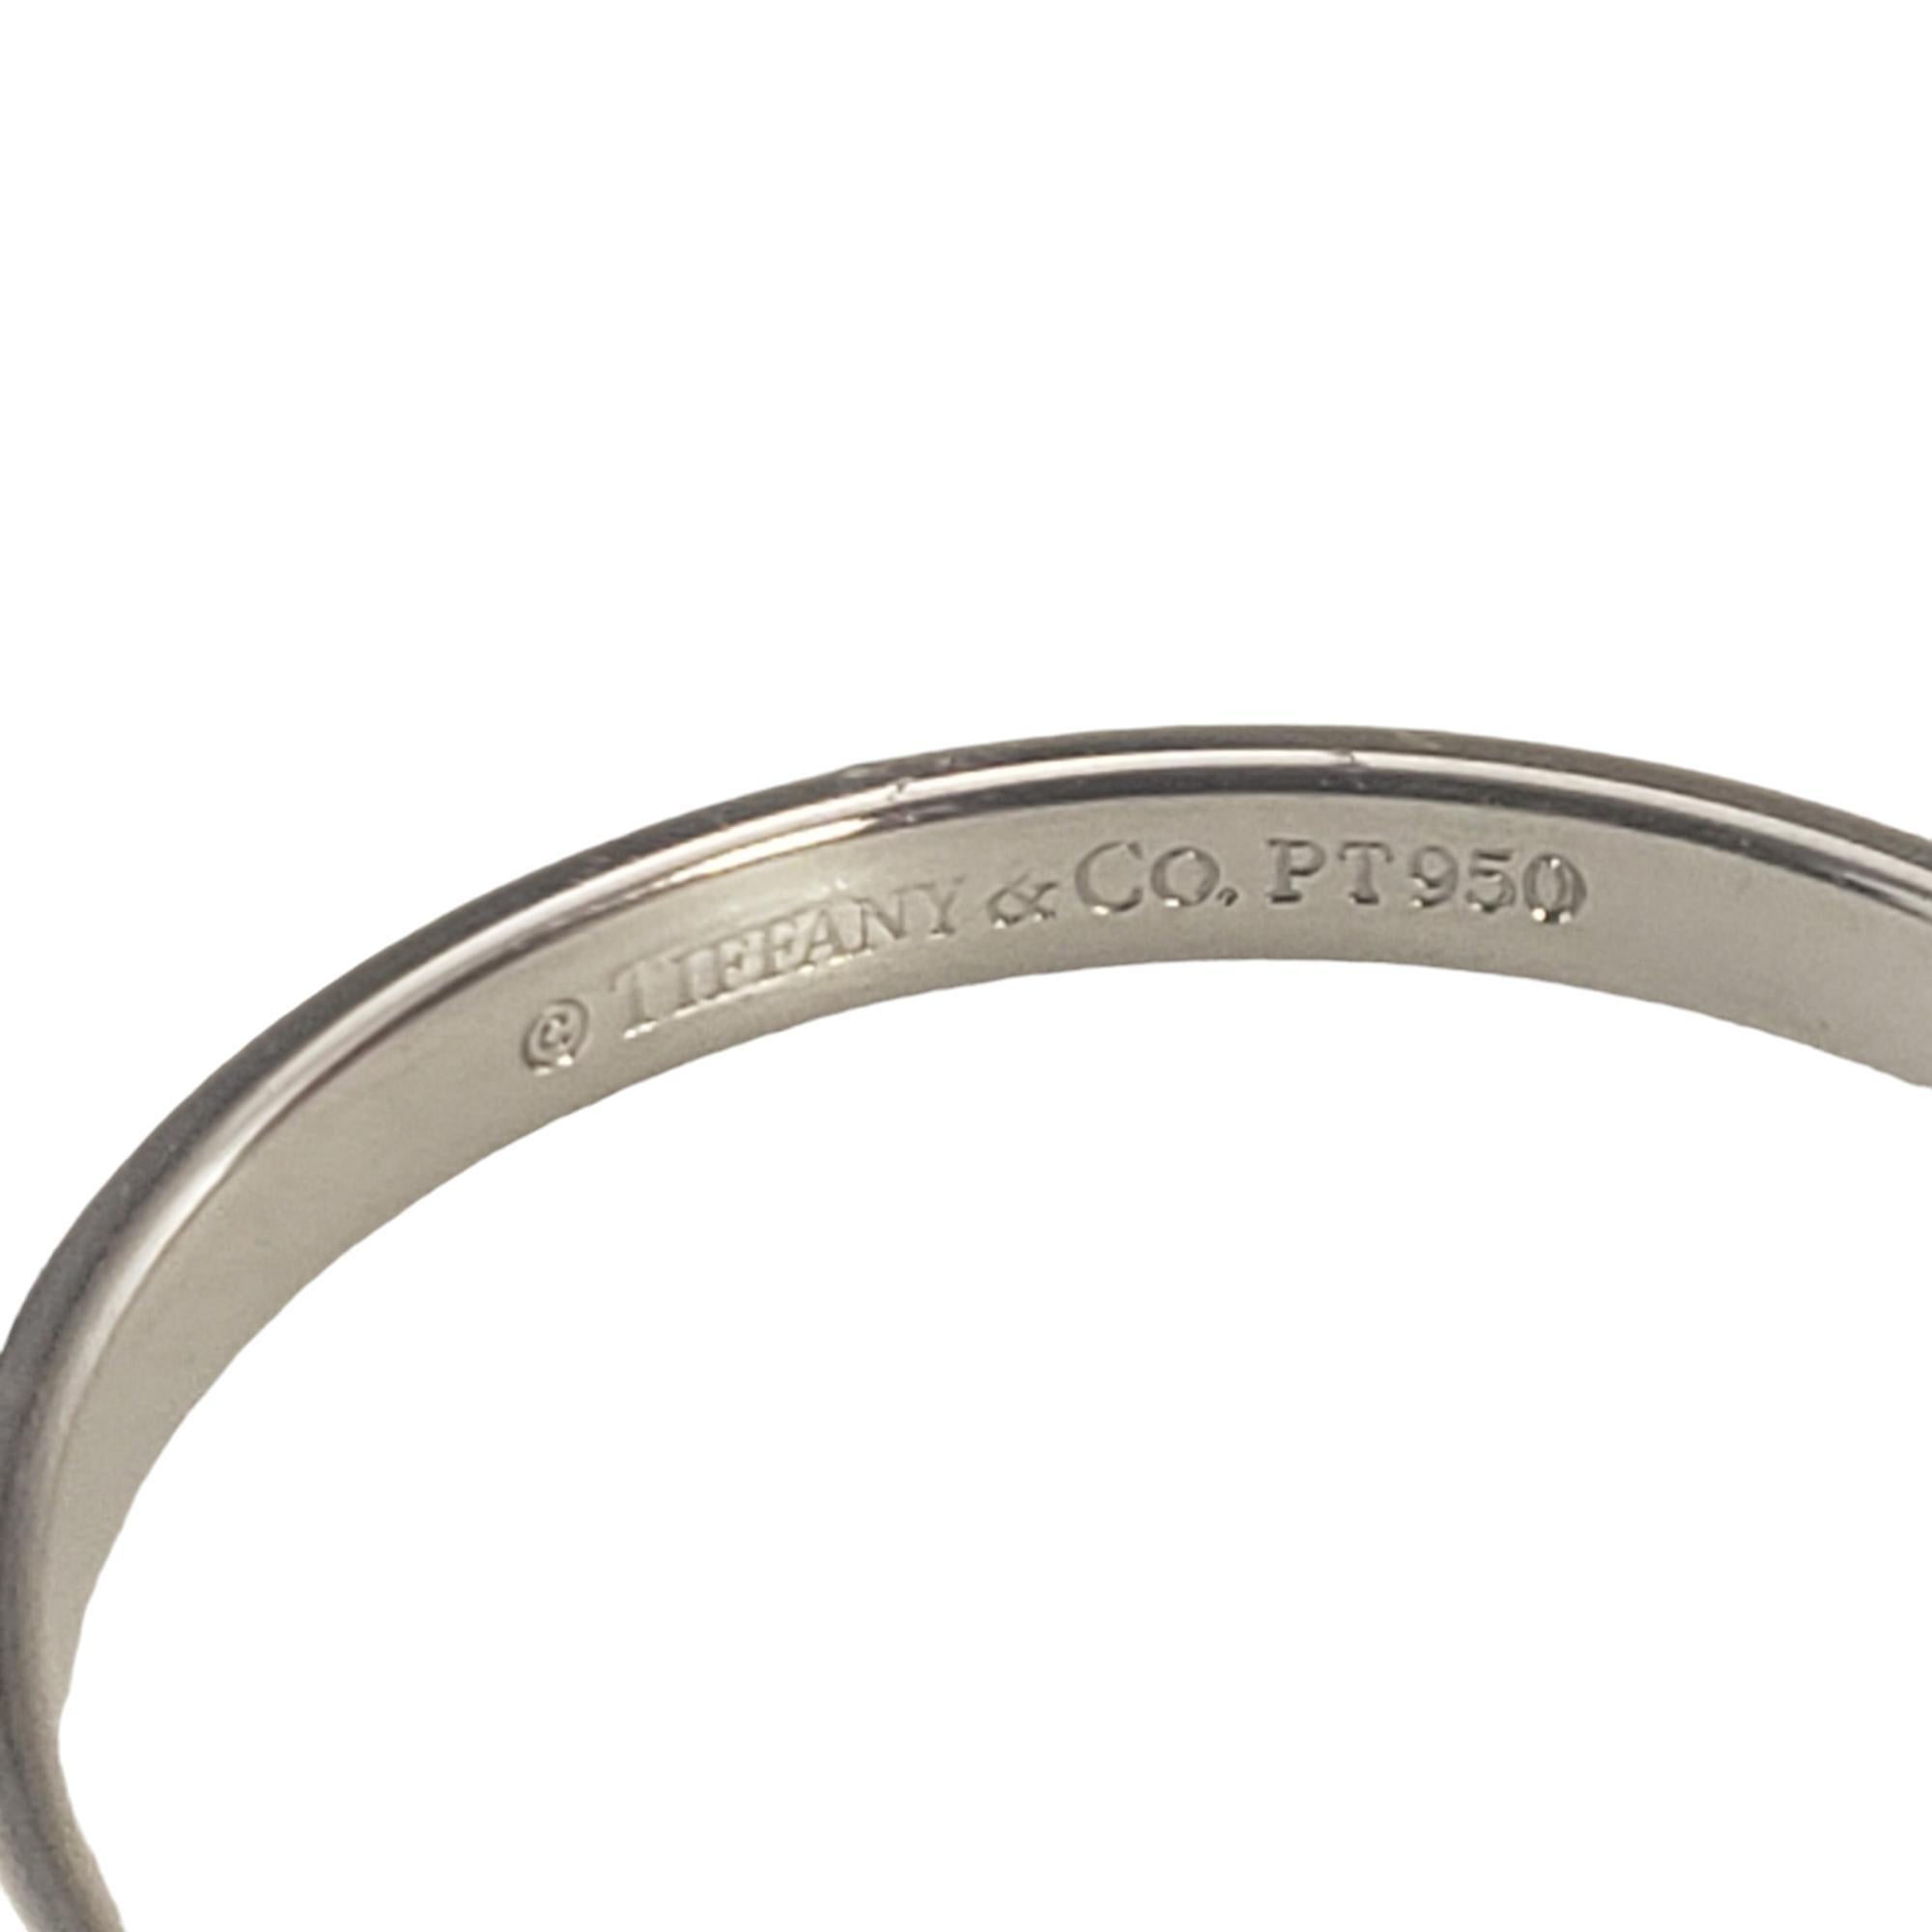 Tiffany & Co. Platinum Wedding Band Ring Size 7.5 #16810 1